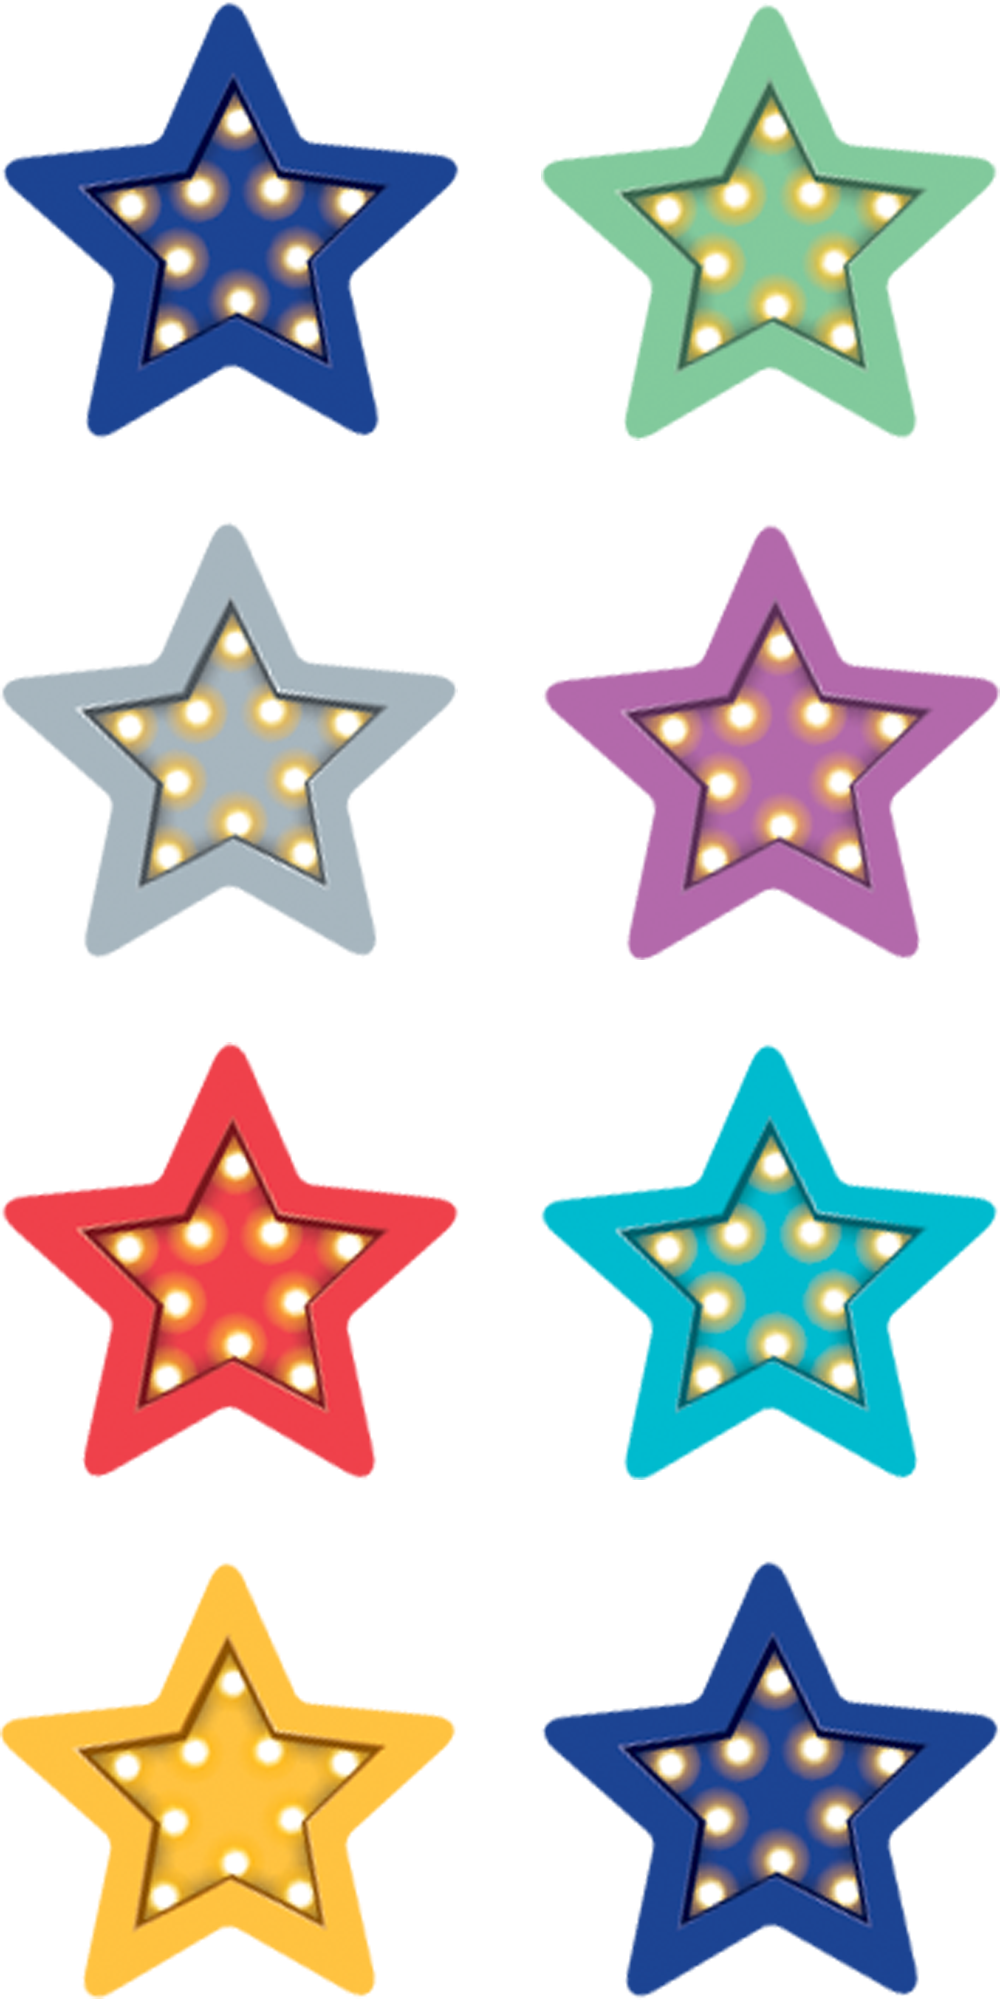 Marquee Stars Mini Stickers